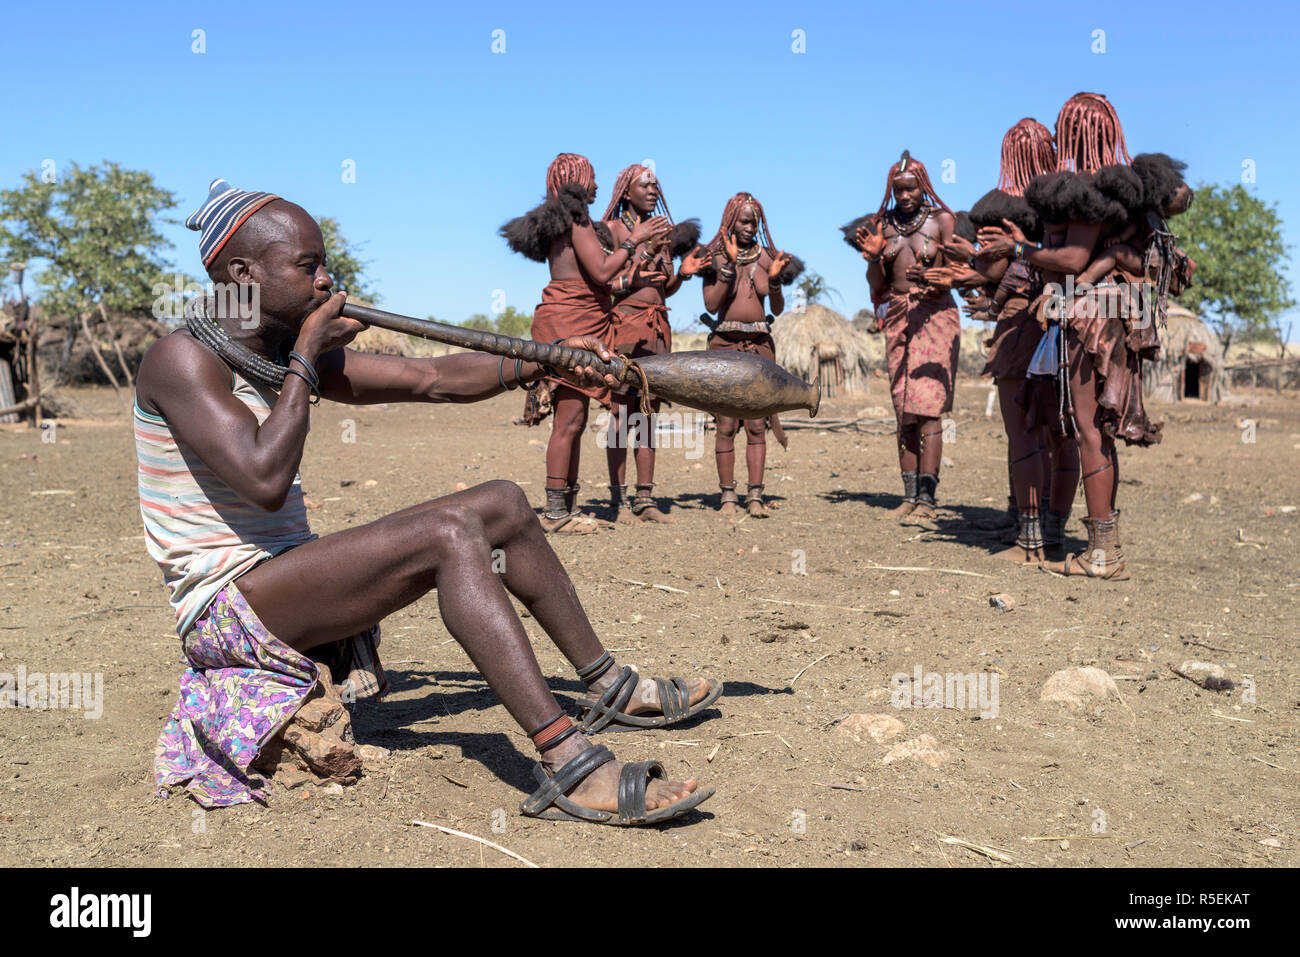 Gruppe von Frauen Himba mit traditionellen Kleider tanzen im Kreis, während ein Mann spielt eine Trompete aus einem orix Horn. Stockfoto